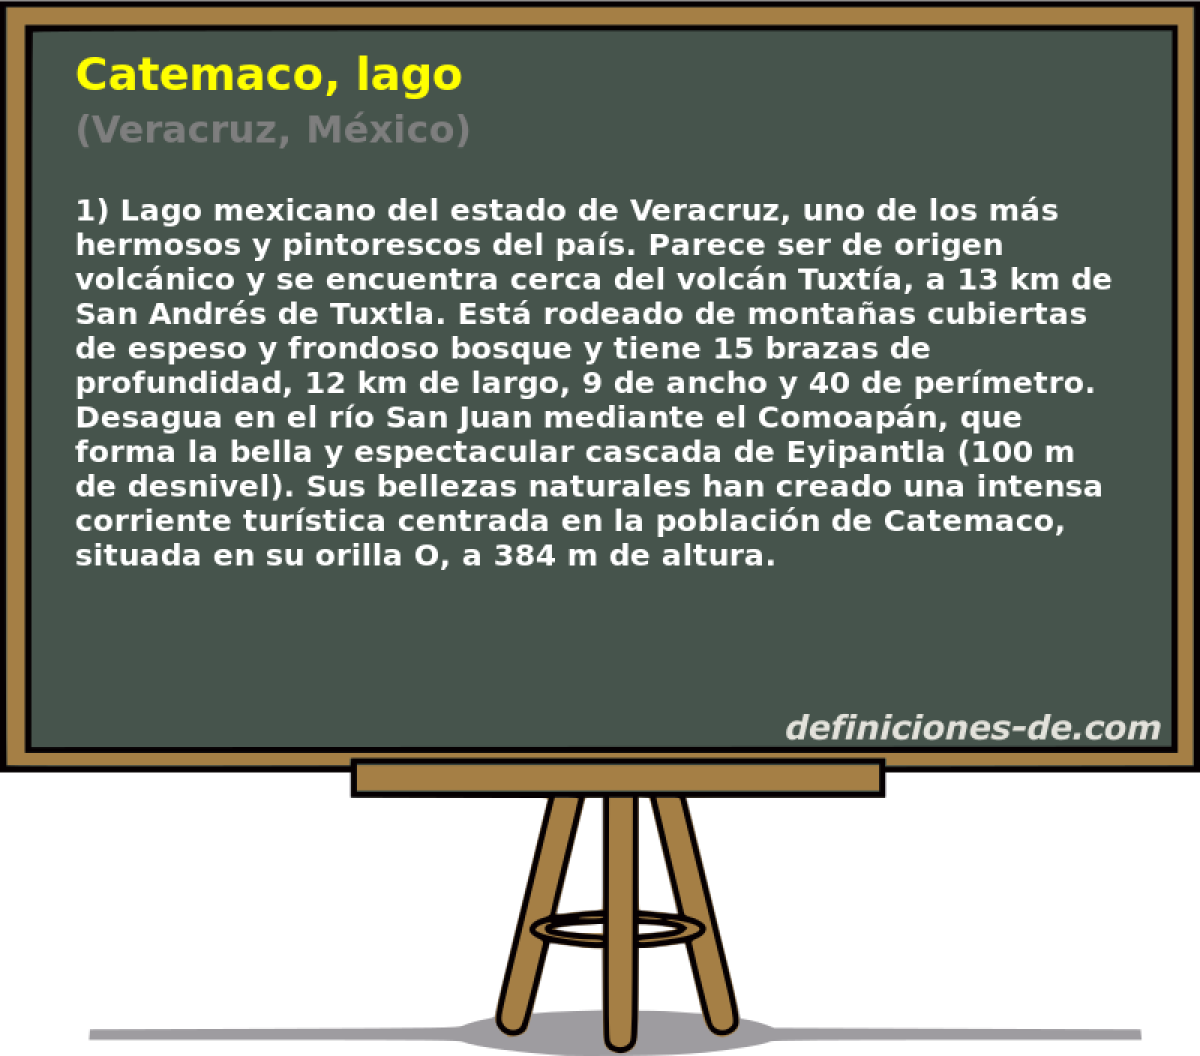 Catemaco, lago (Veracruz, Mxico)